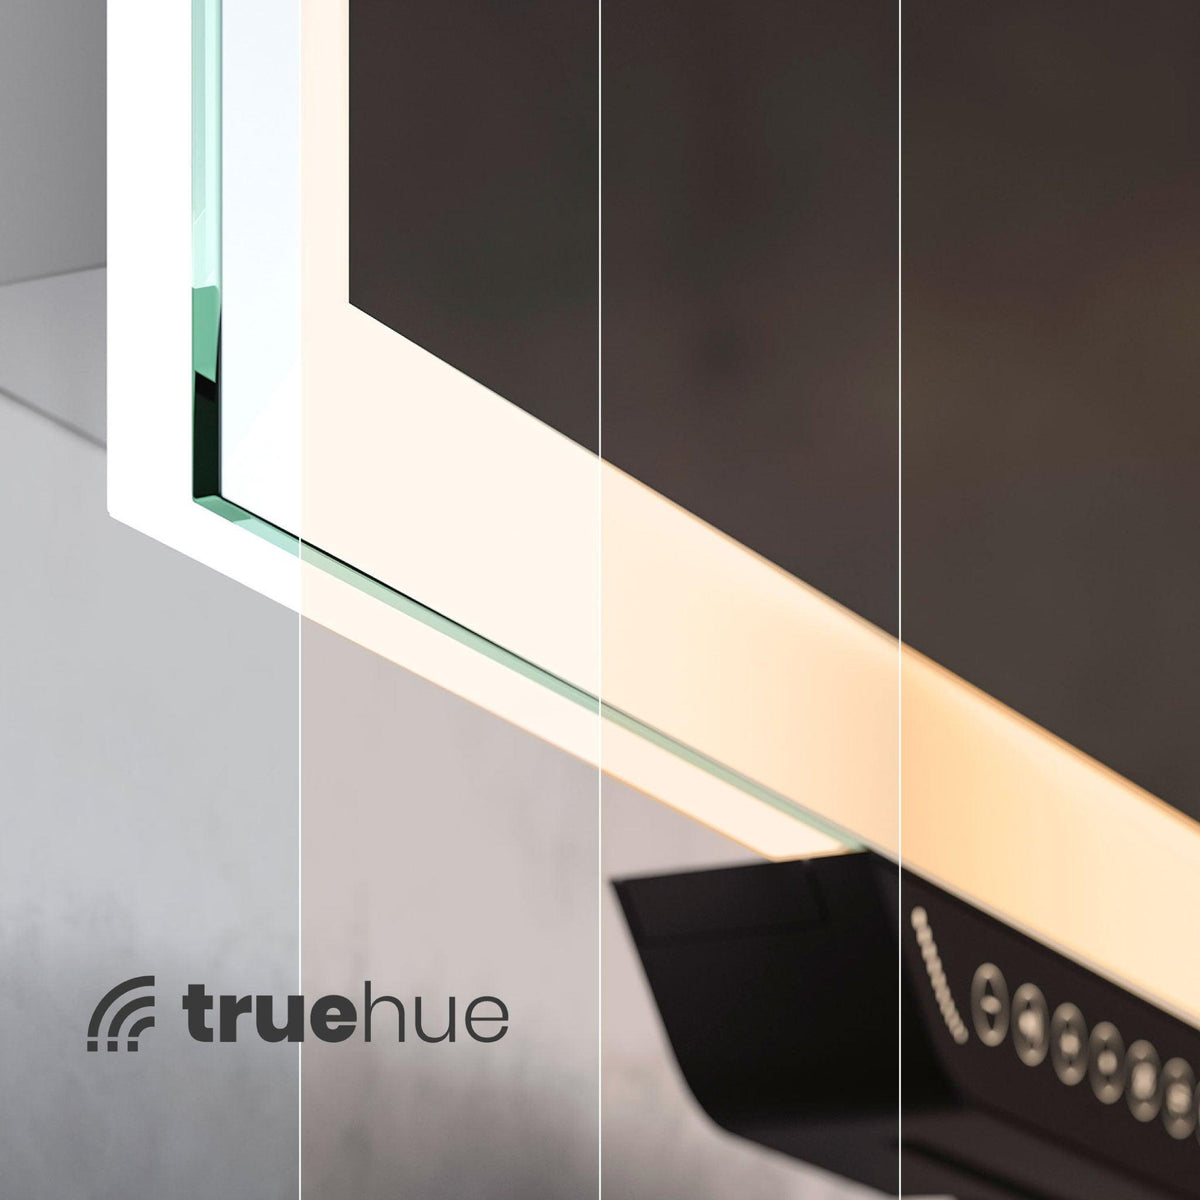 Illuminated Smart Mirror with Alexa Built-in - Luka Smart Ltd